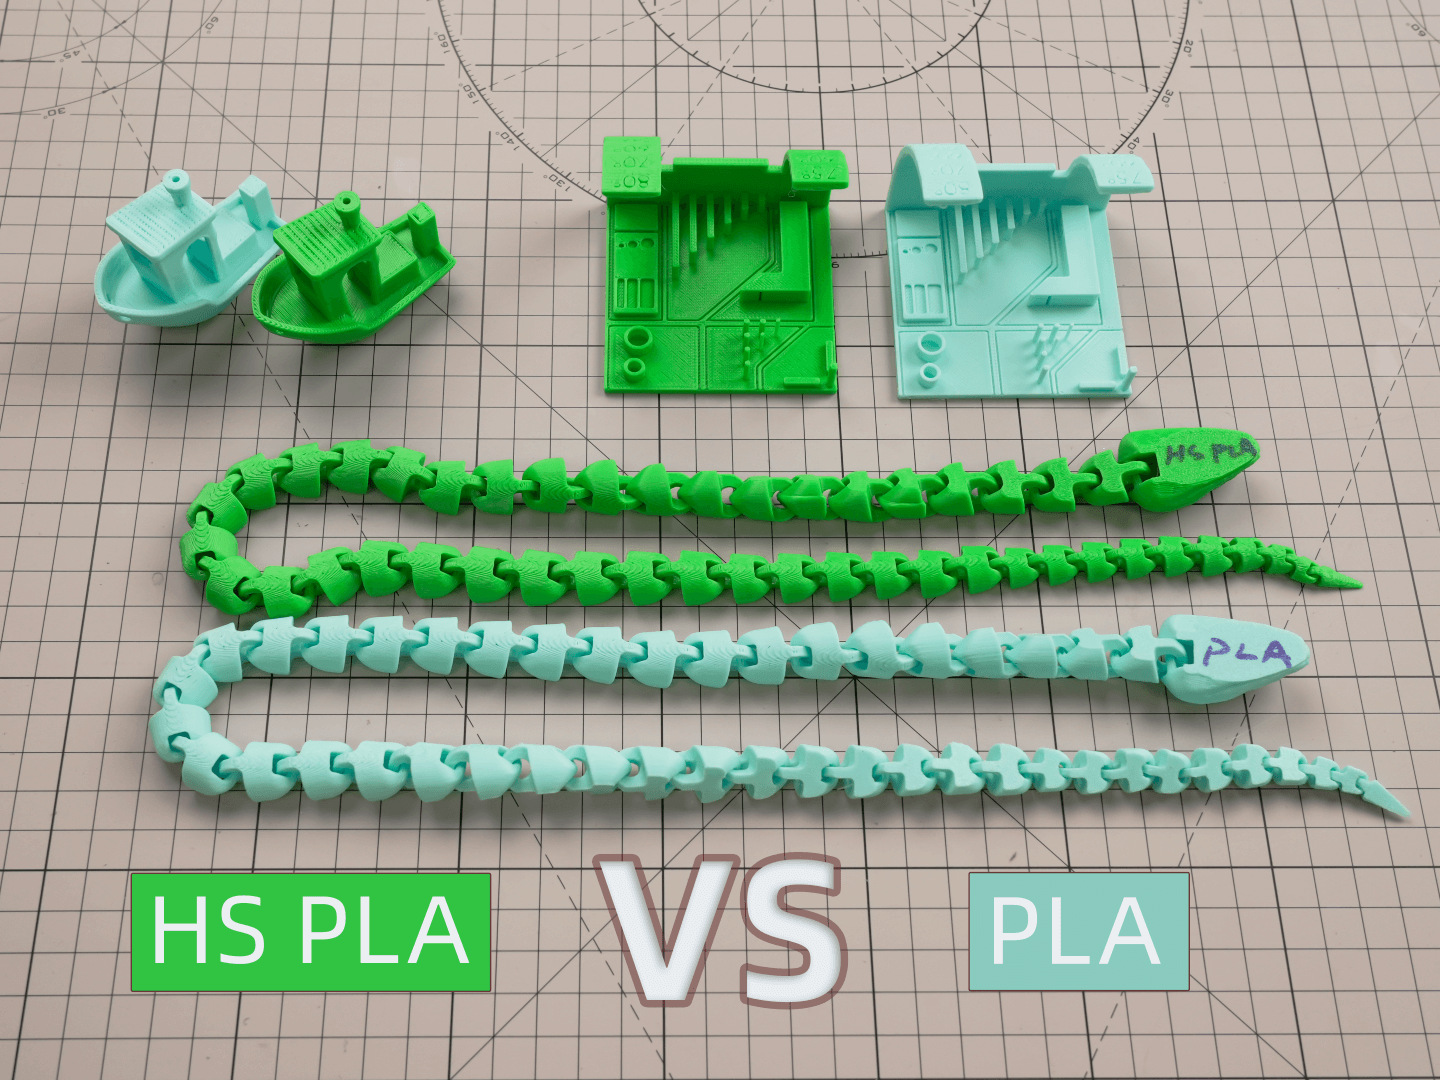 為什麼選擇高速耗材？HS PLA vs PLA